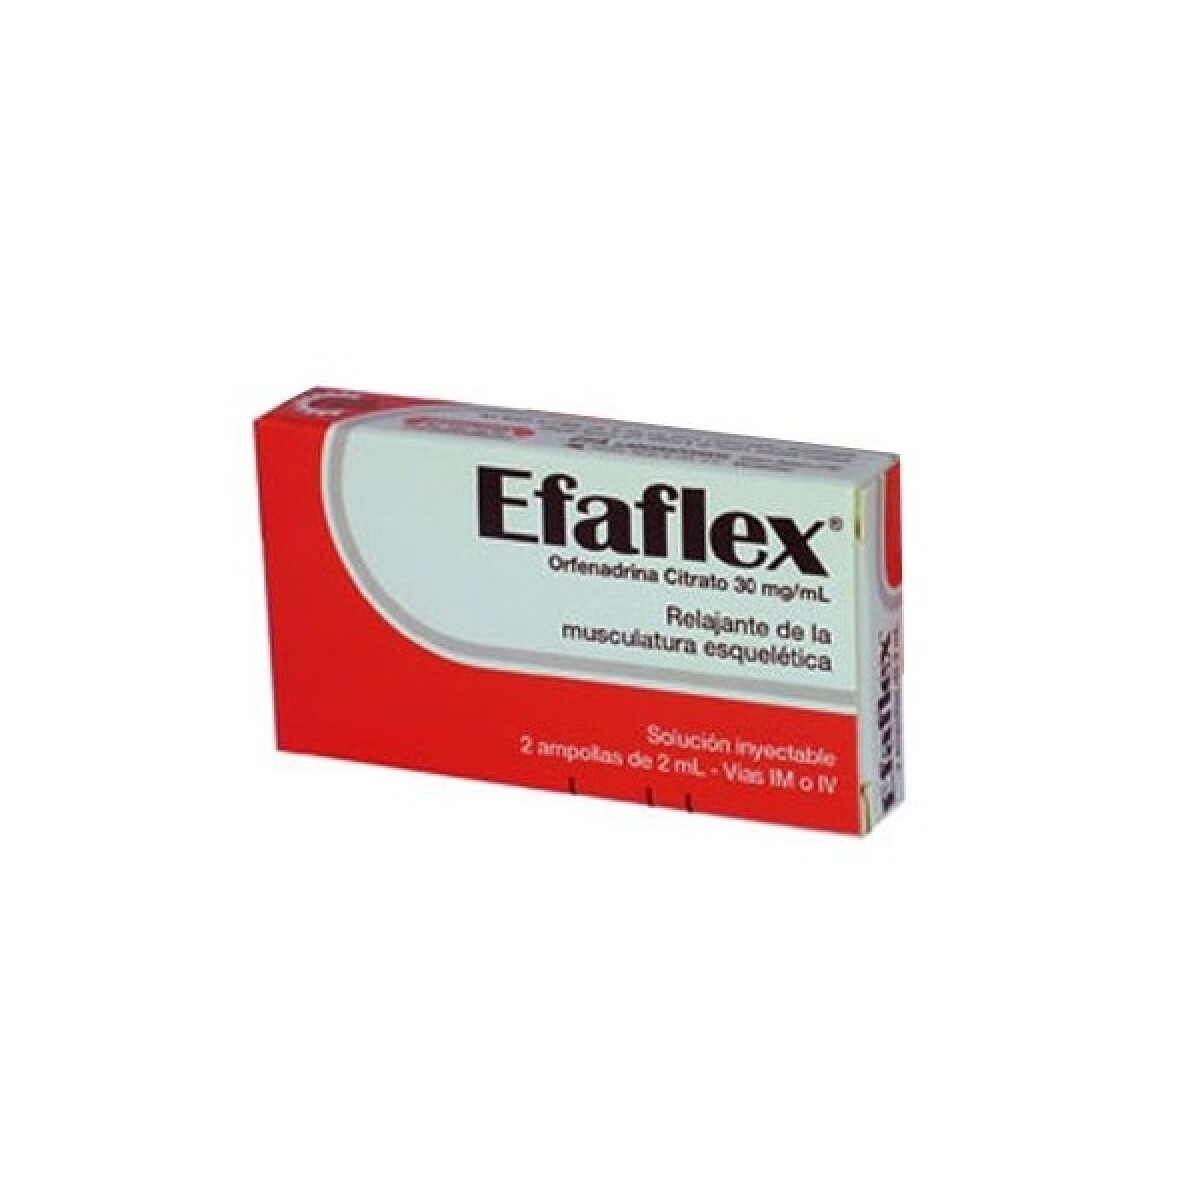 Efaflex Inyectable 2 Ml. 2 Ampollas 